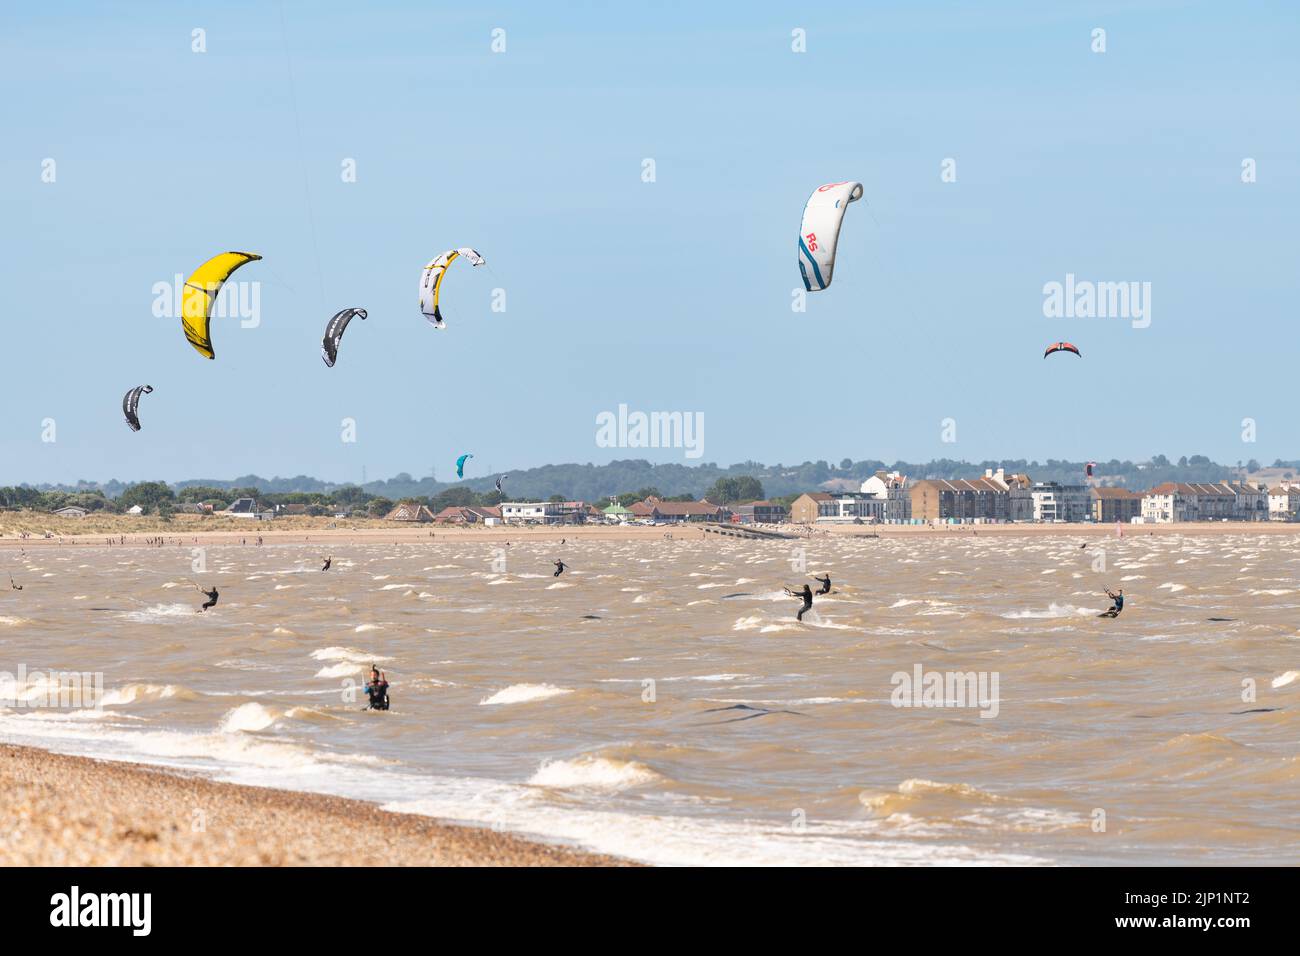 Kitesurfers at Greatstone Beach, Greatstone on Sea, Kent, England, UK Stock Photo